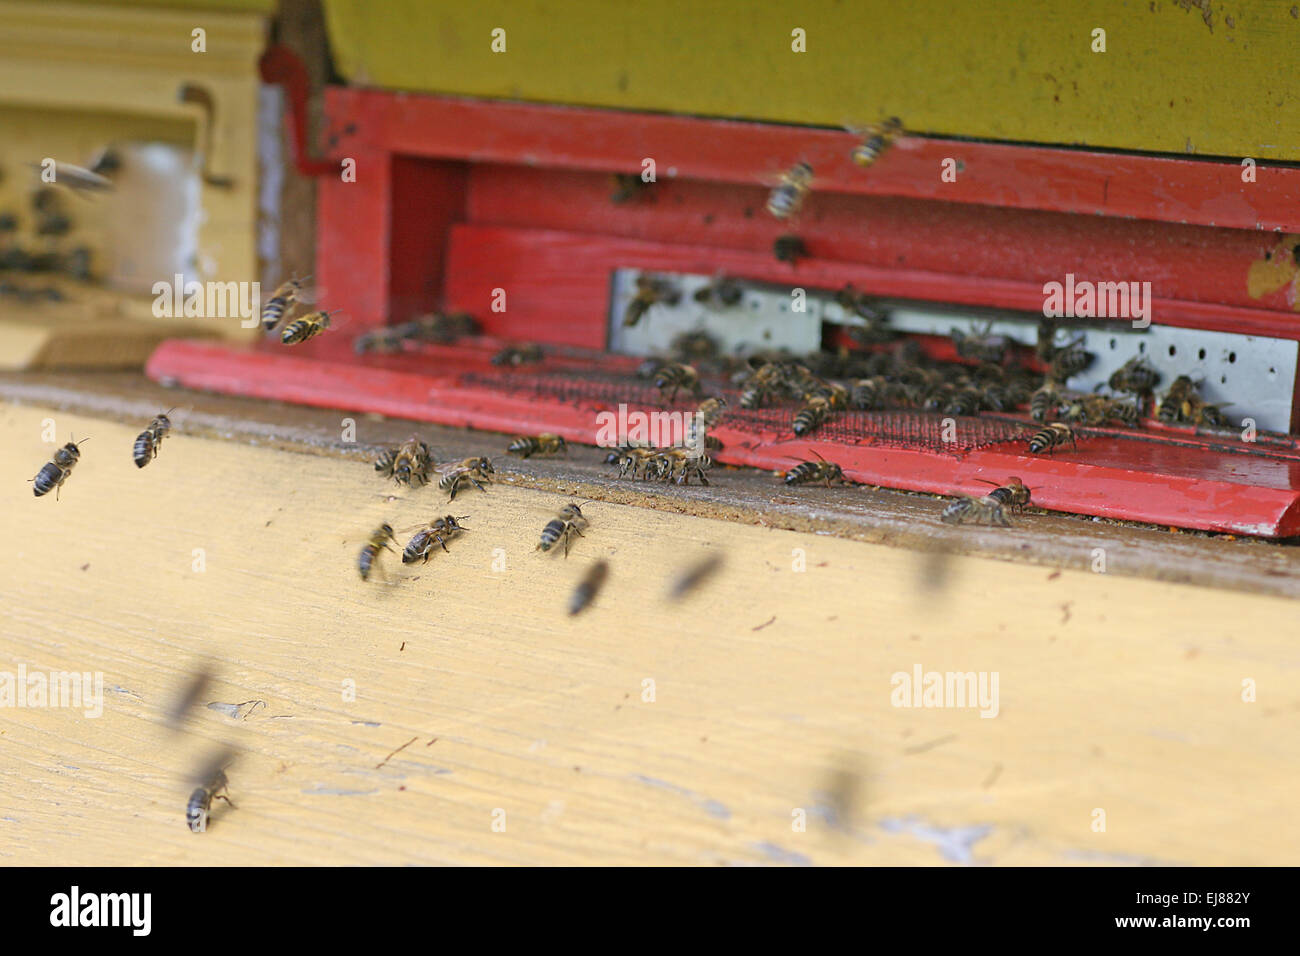 apiary Stock Photo